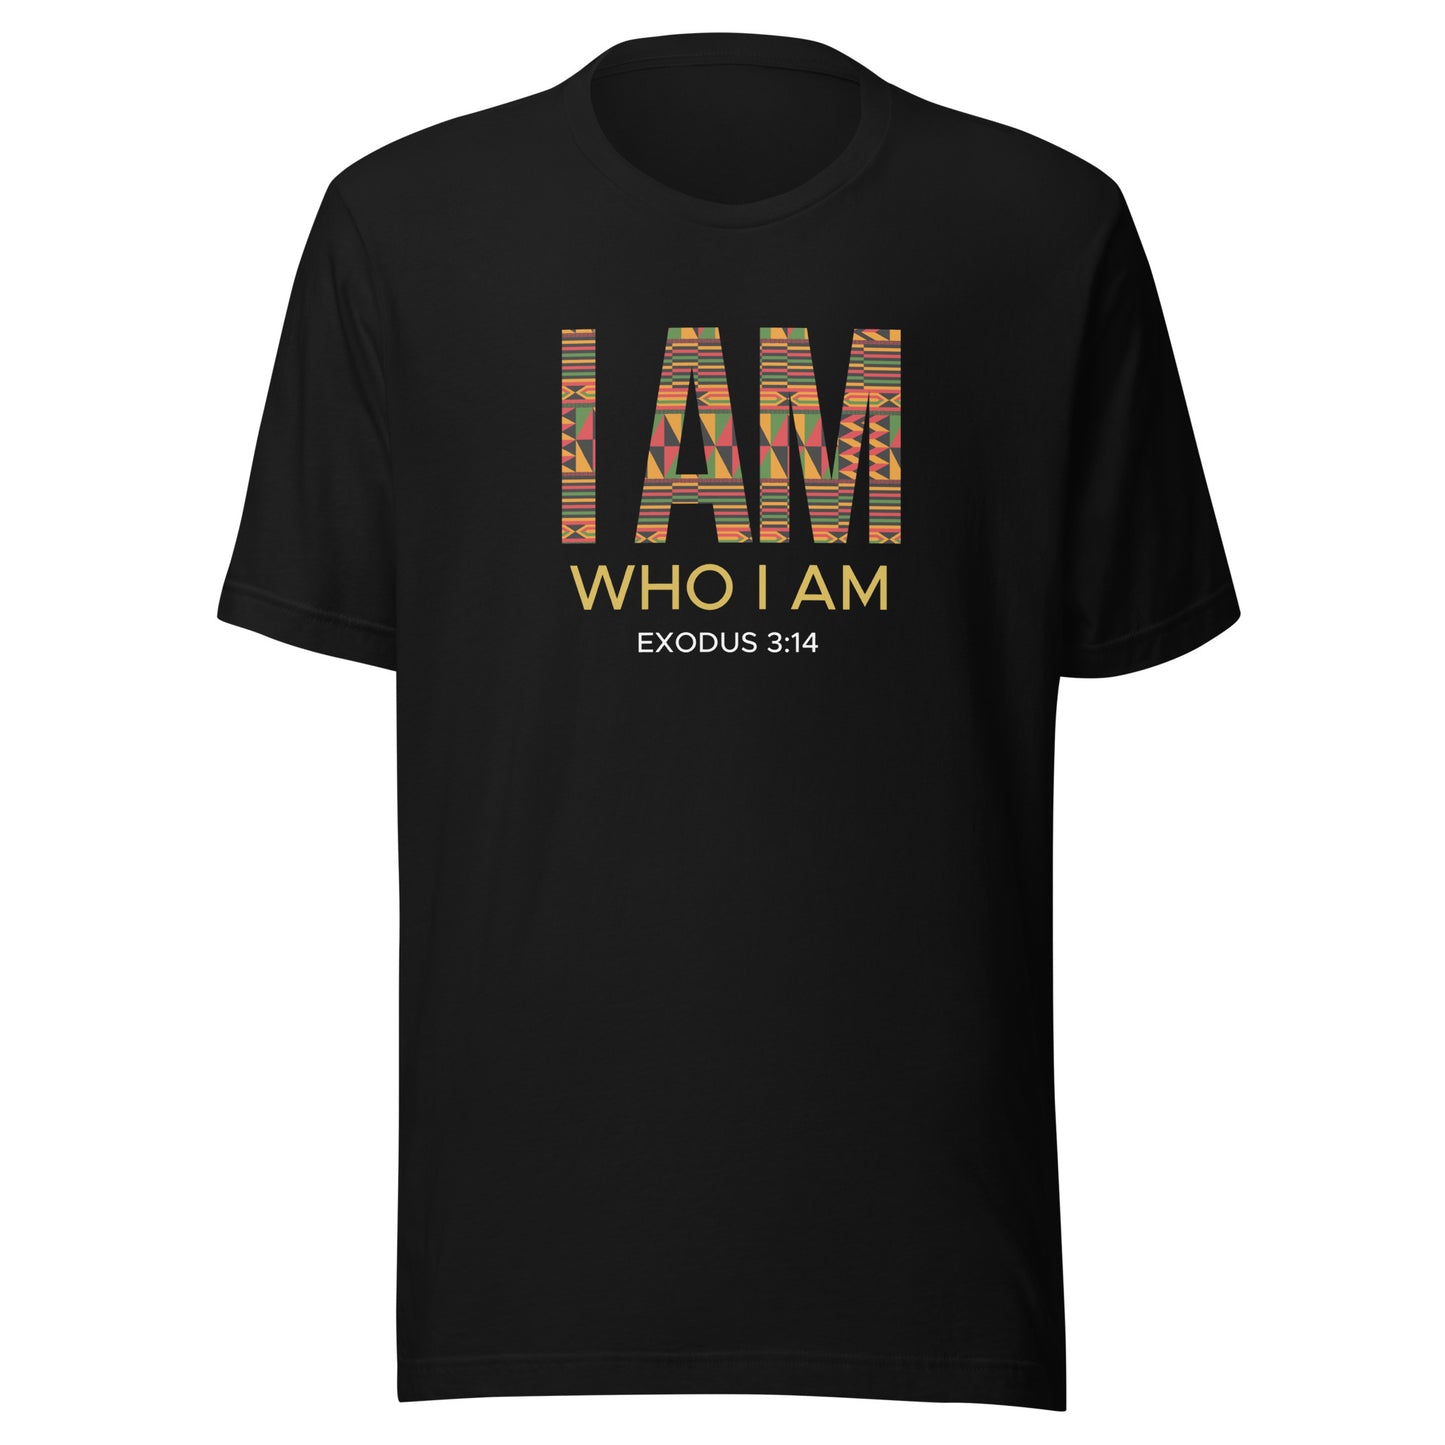 I AM WHO I AM Unisex t-shirt